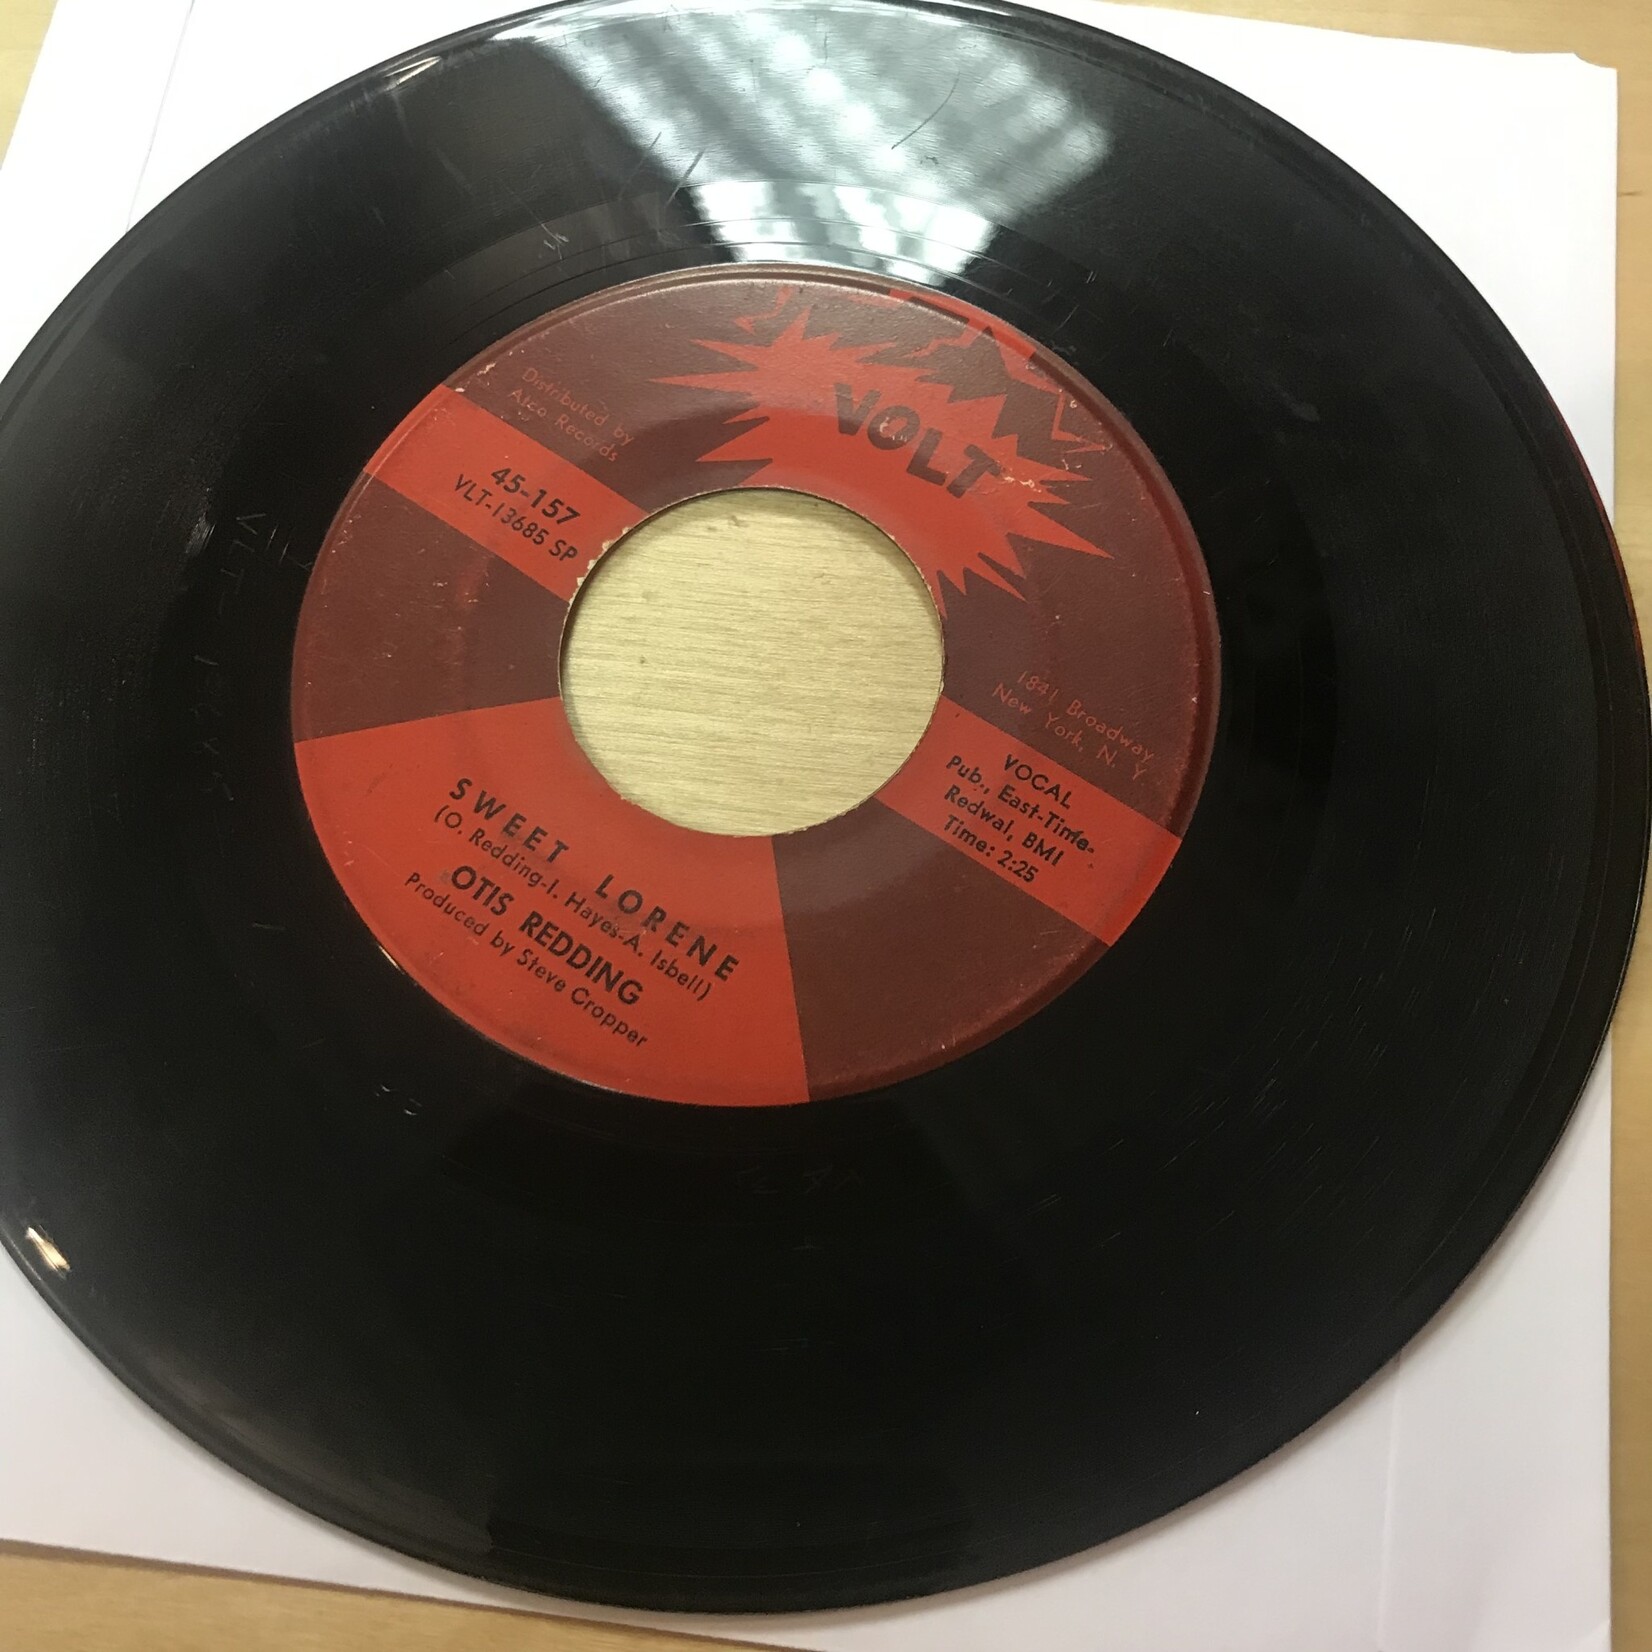 Otis Redding - Dock Of The Bay / Sweet Lorraine - VLT 13684 SP - Vinyl 45 (USED)